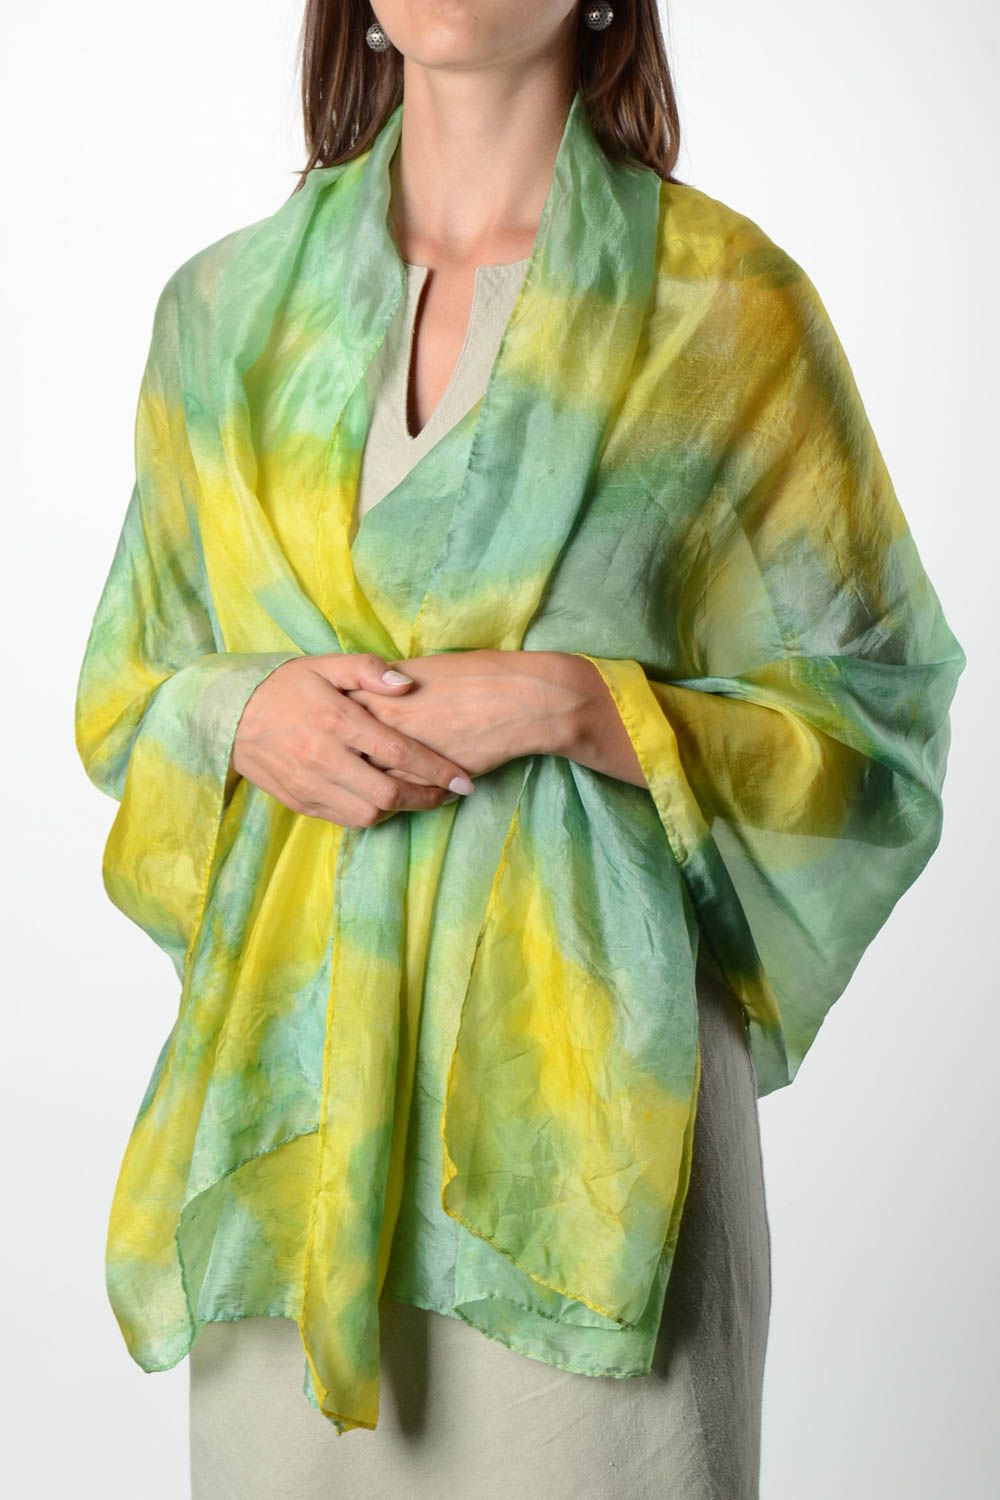 Écharpe soie Accessoire fait main jaune vert Cadeau femme original avec peinture photo 1